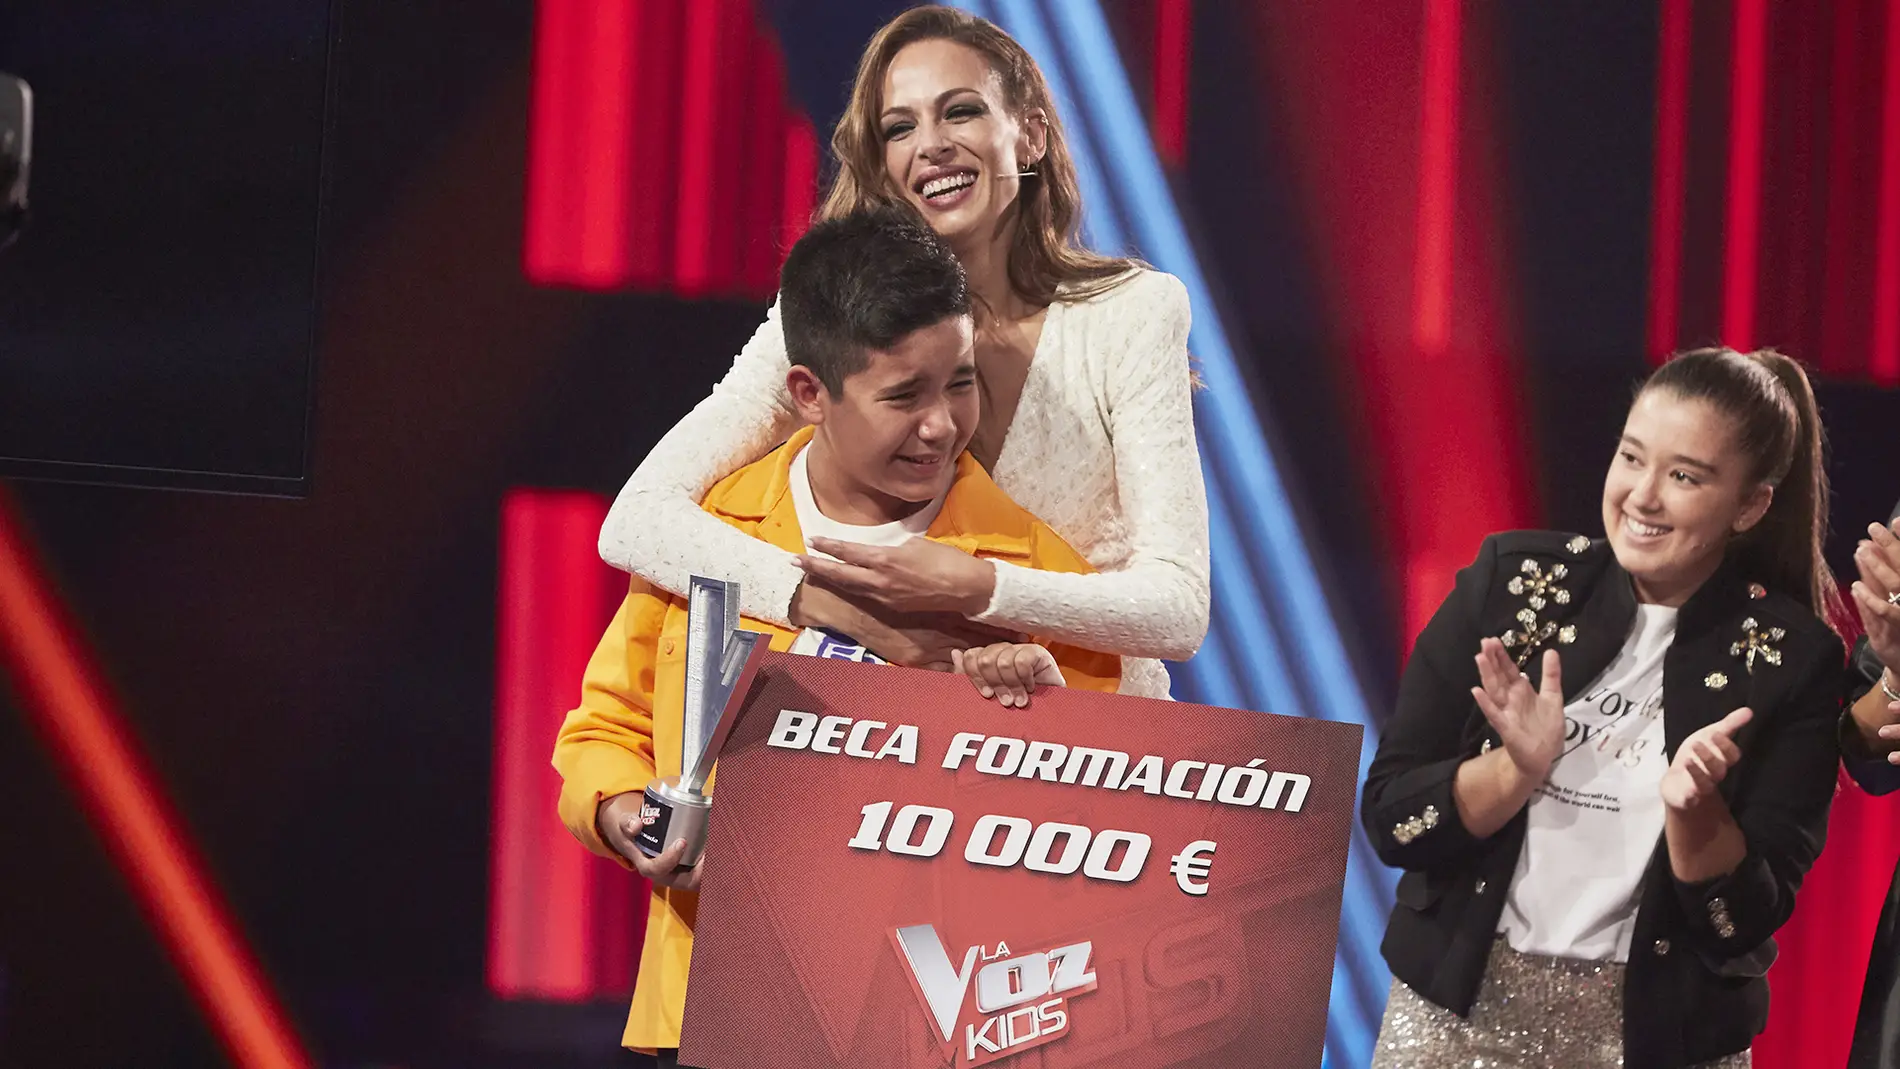 Levi Díaz gana de ‘La Voz Kids 2021’ en el equipo de Melendi tras una emocionante votación